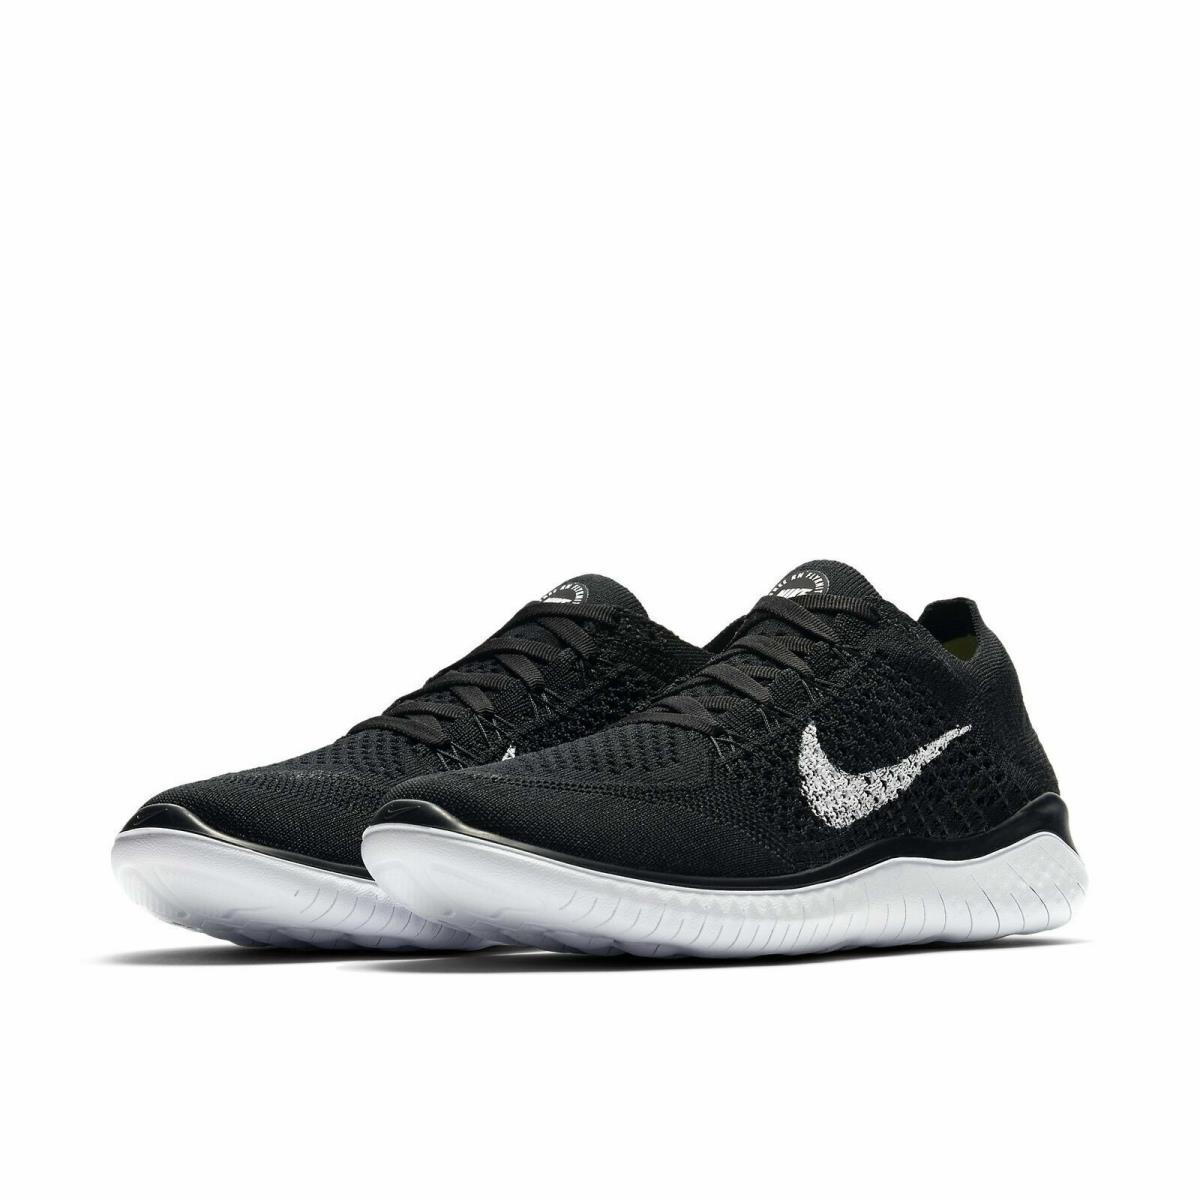 Nike shoes Free Flyknit - Black / White 1